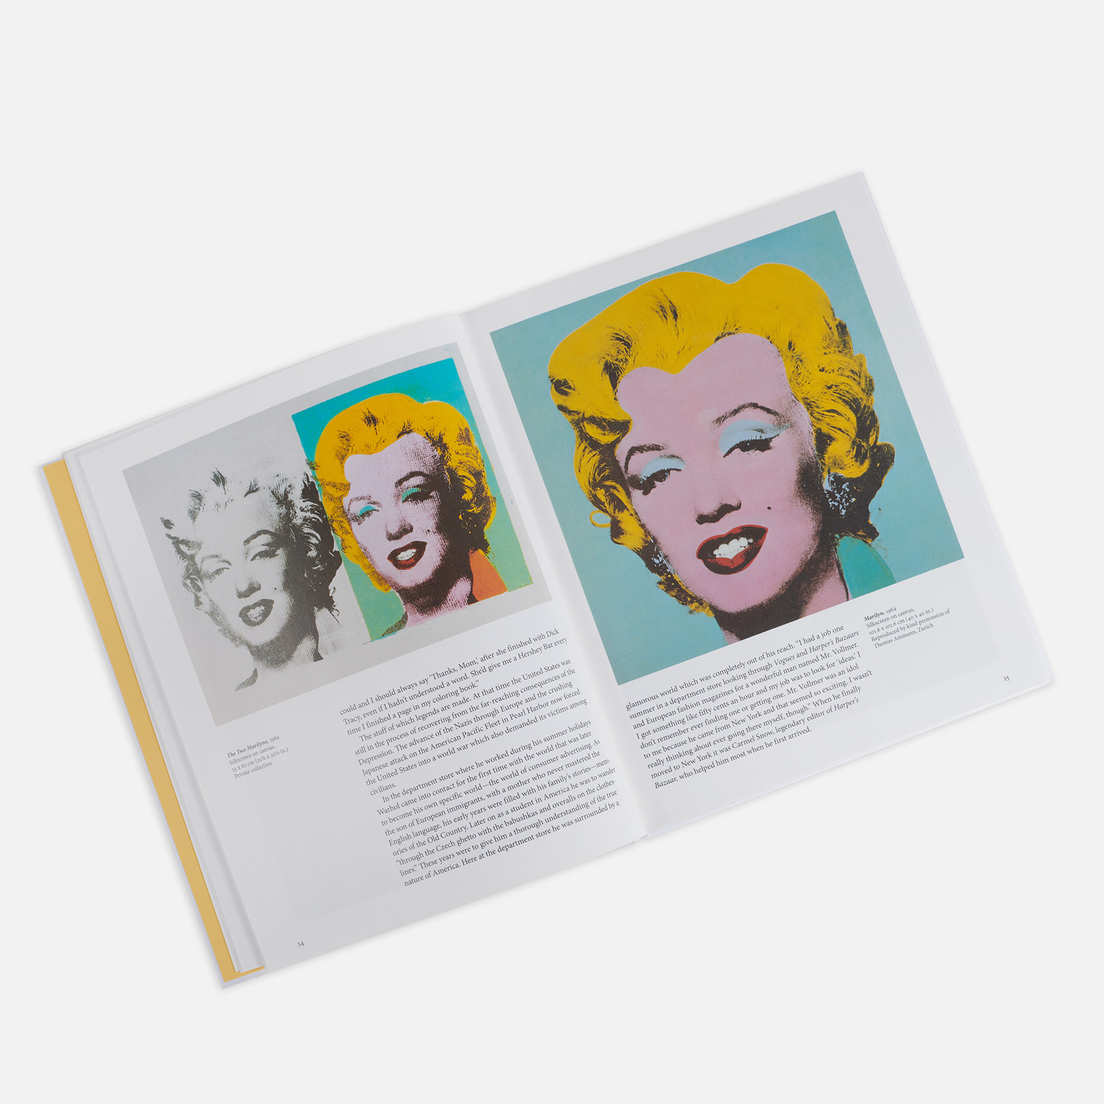 TASCHEN Книга Warhol